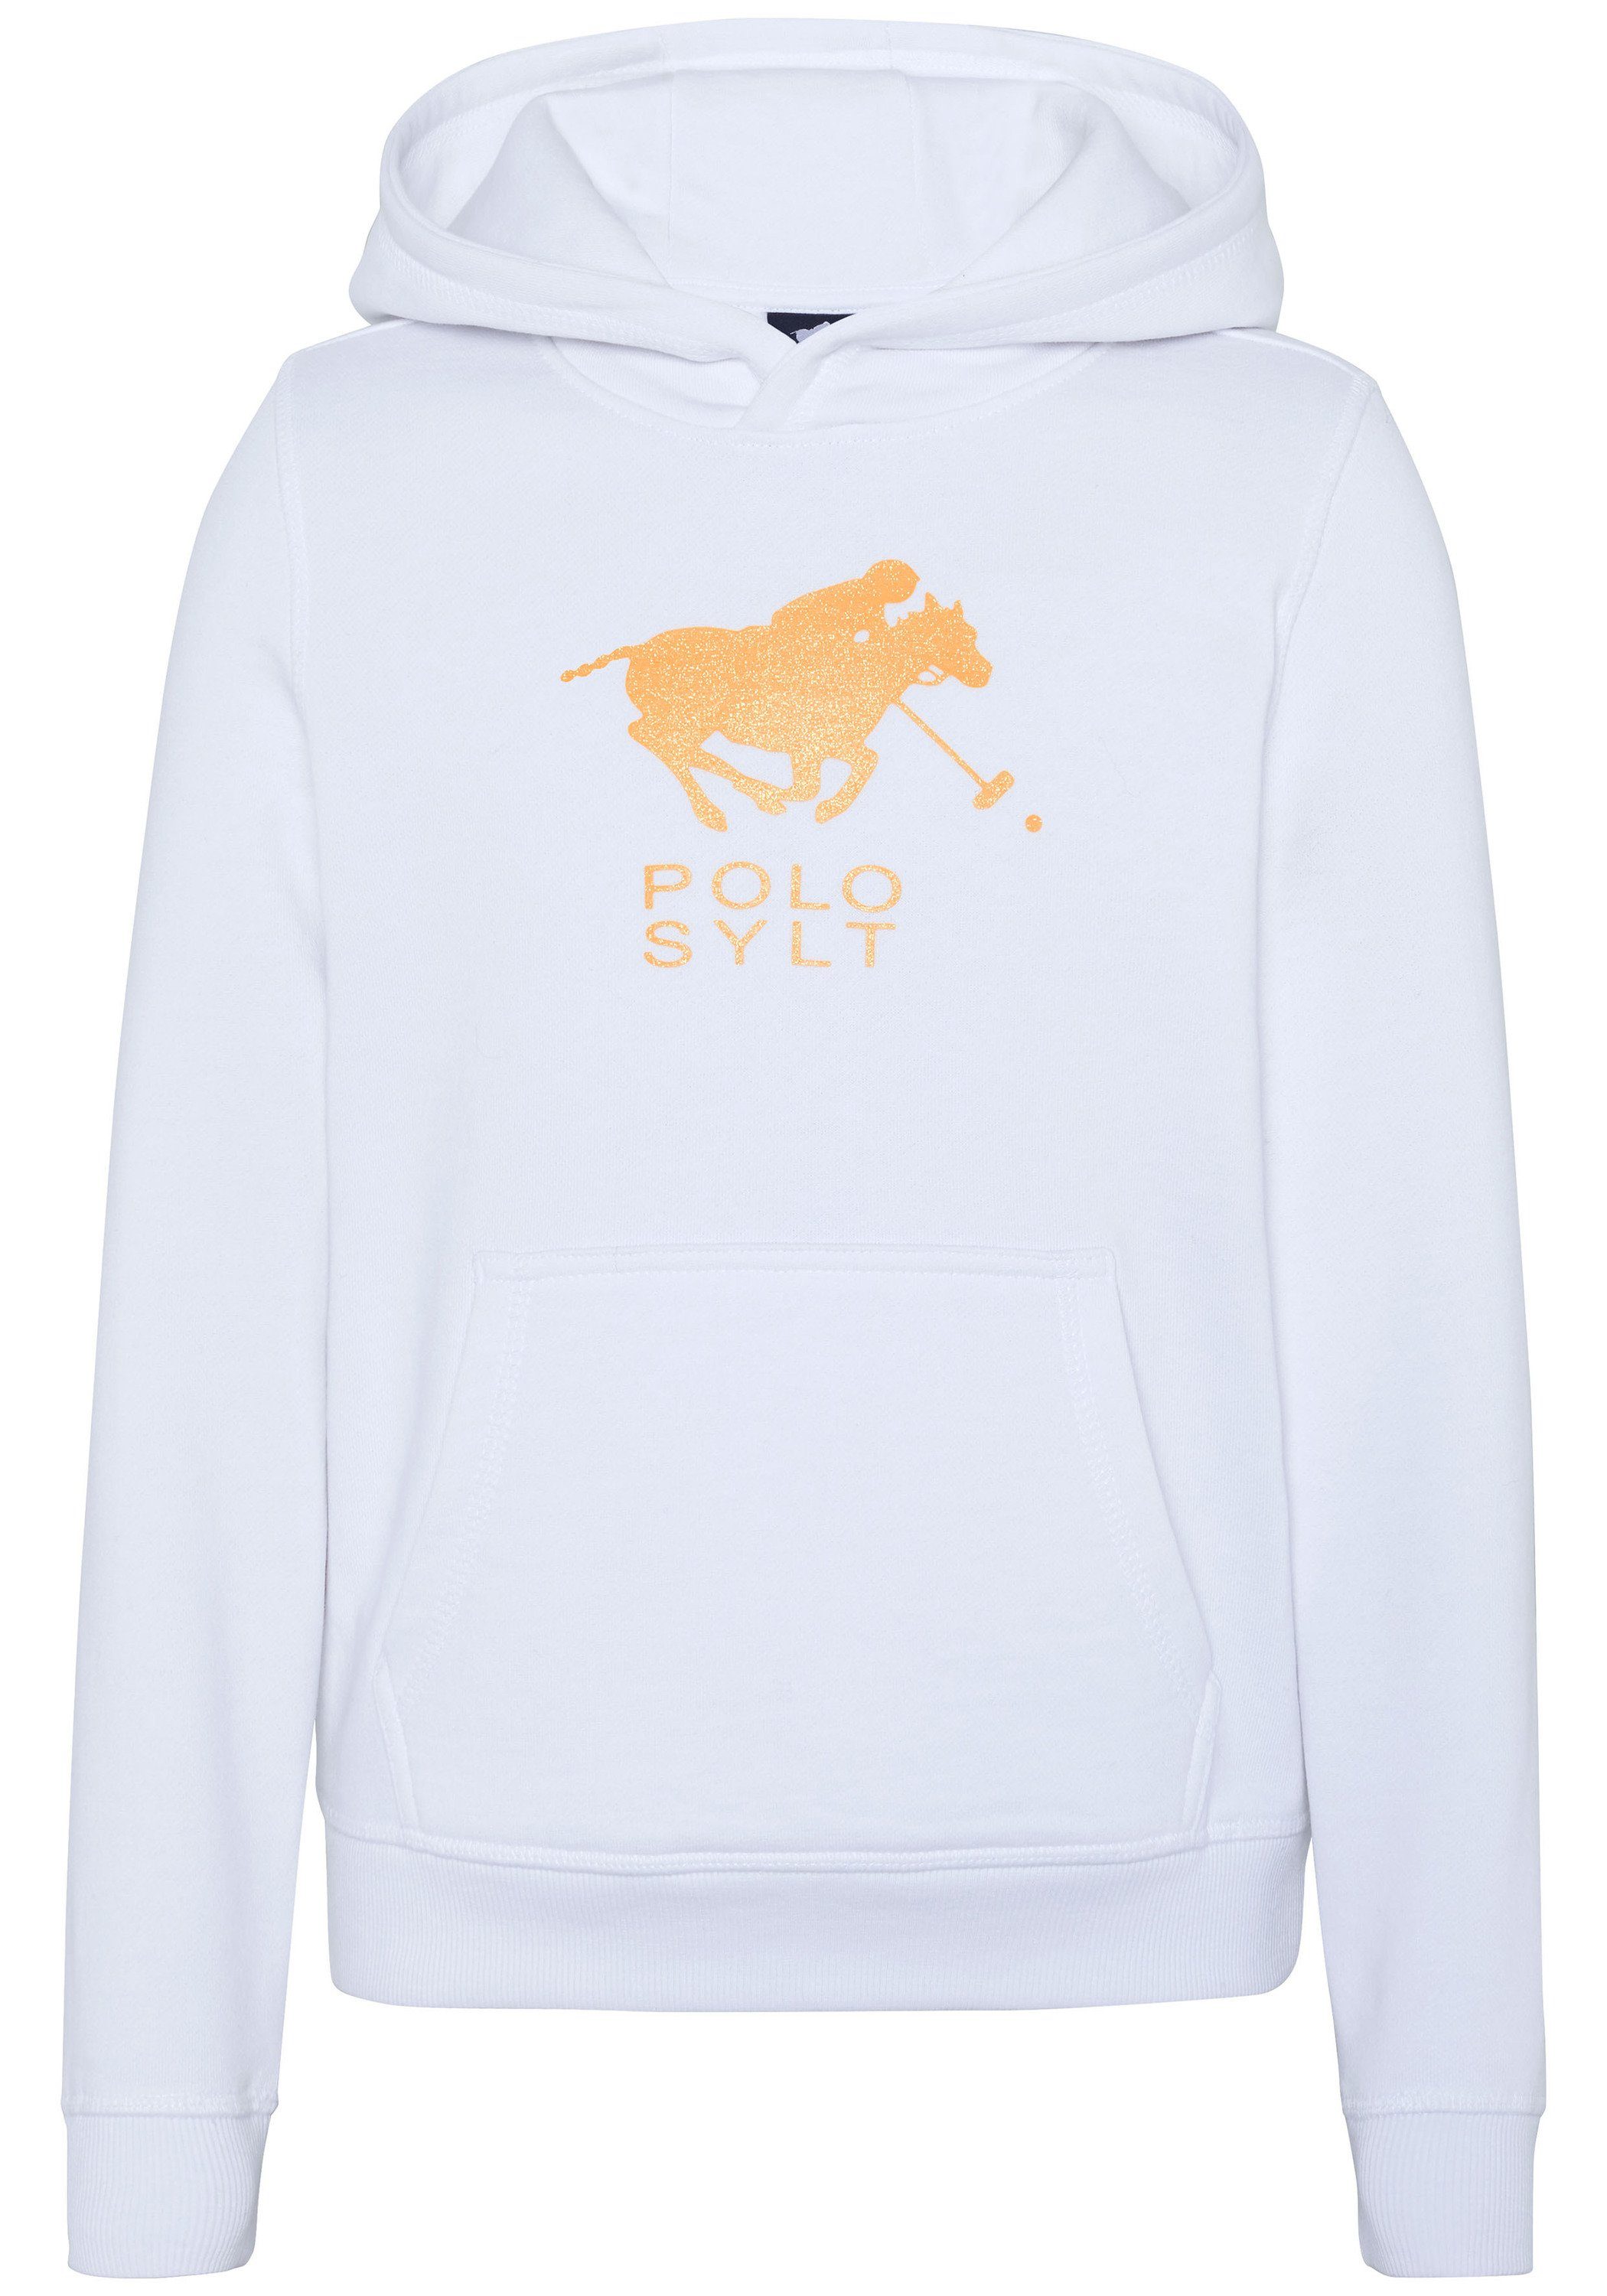 Label-Motiv glitzerndem White Polo Sylt mit Sweatshirt Bright